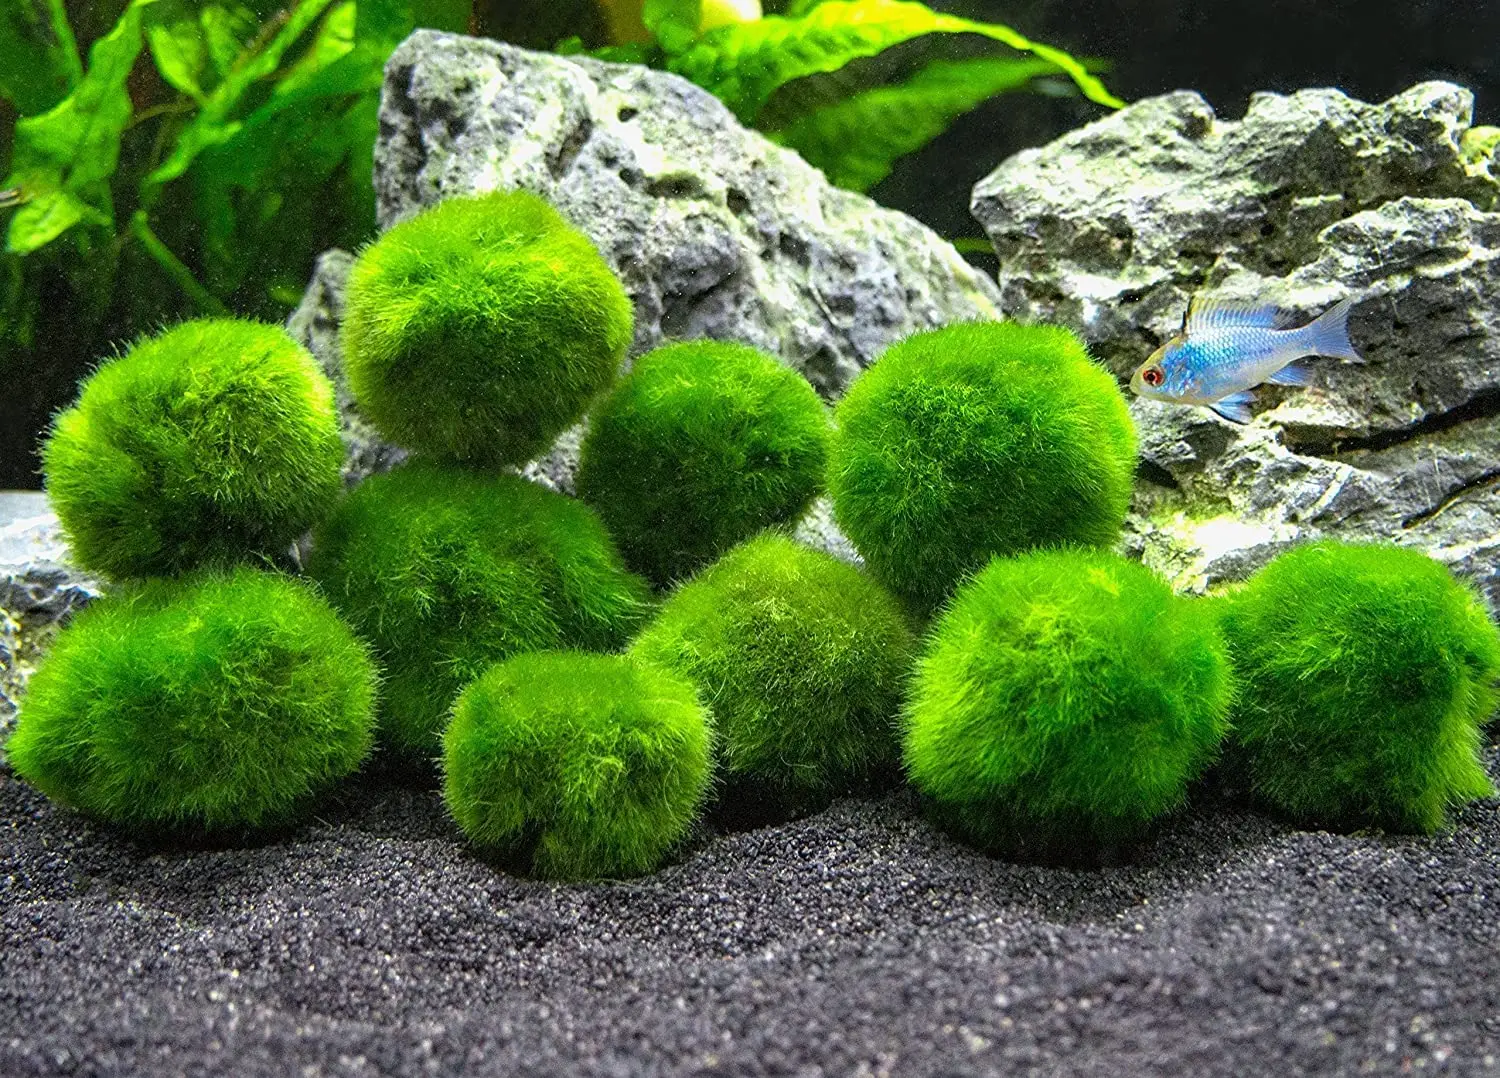 Moss Balls for Fish Tank Aquarium Decorations: Enhance Aquatic Pet  Environments